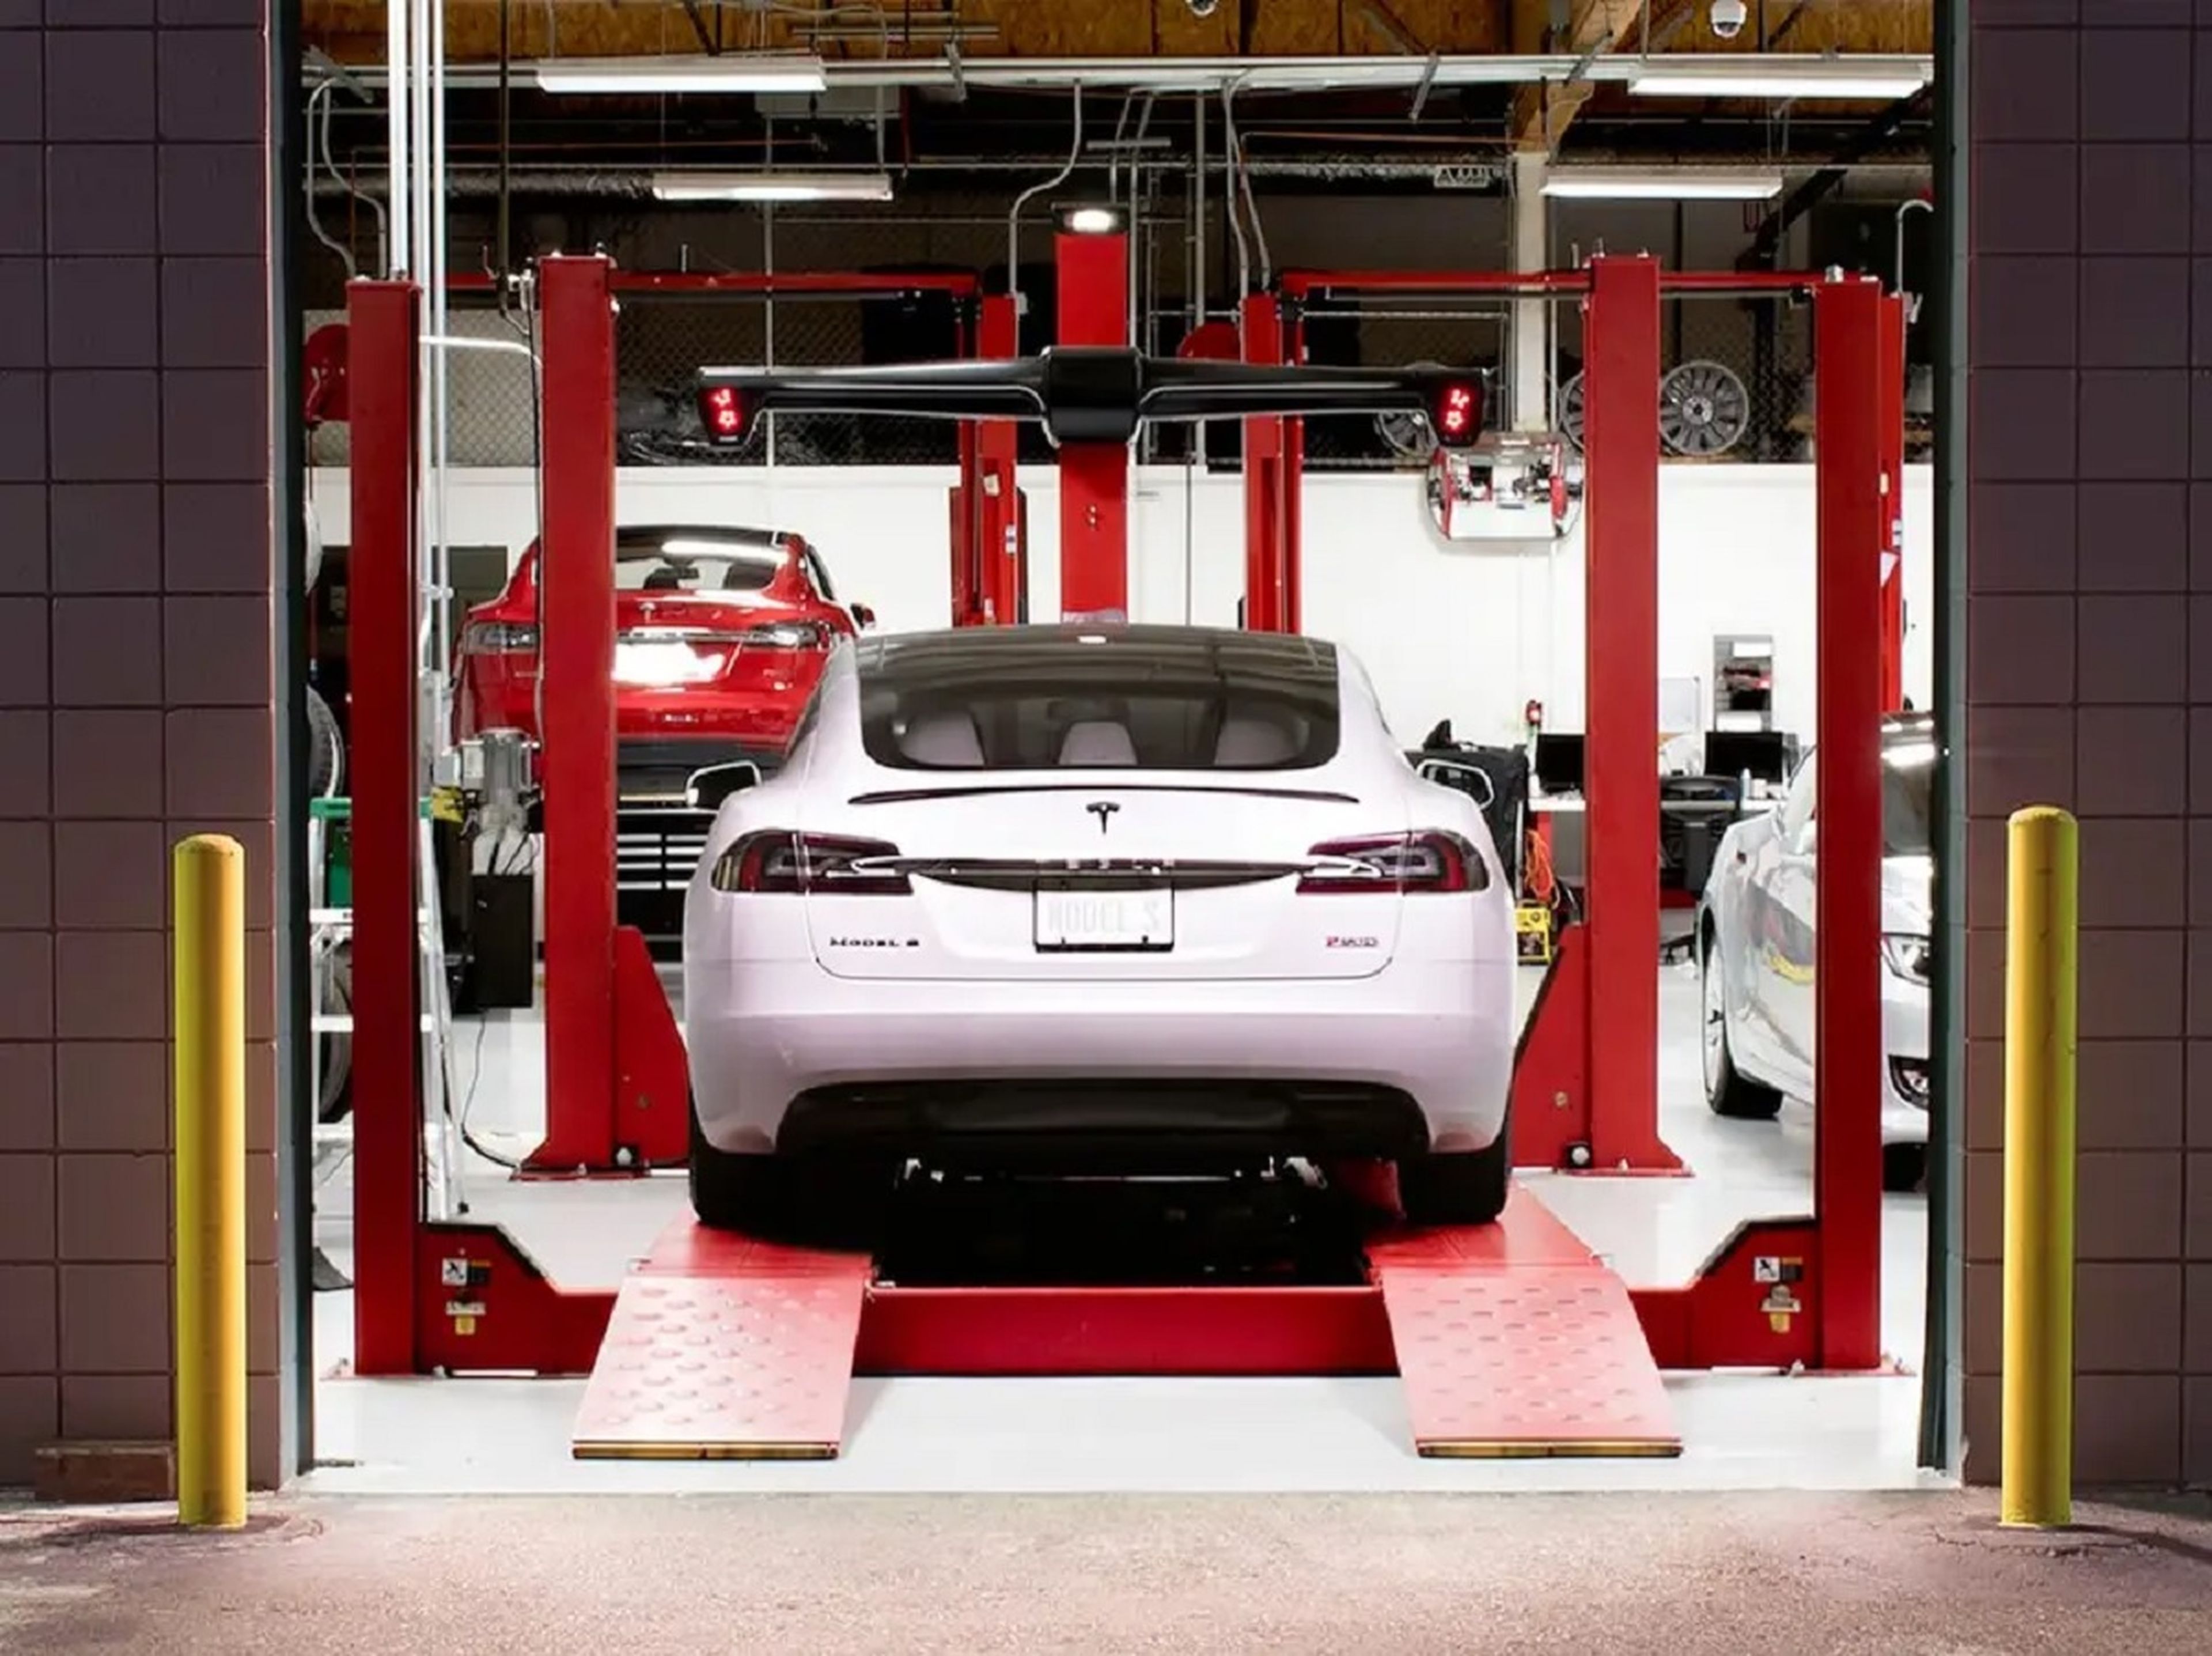 A lo largo de los años, algunos propietarios de Tesla se han quejado de problemas con los centros de servicio del fabricante de automóviles, como largos tiempos de espera, reparaciones deficientes y precios desorbitados.